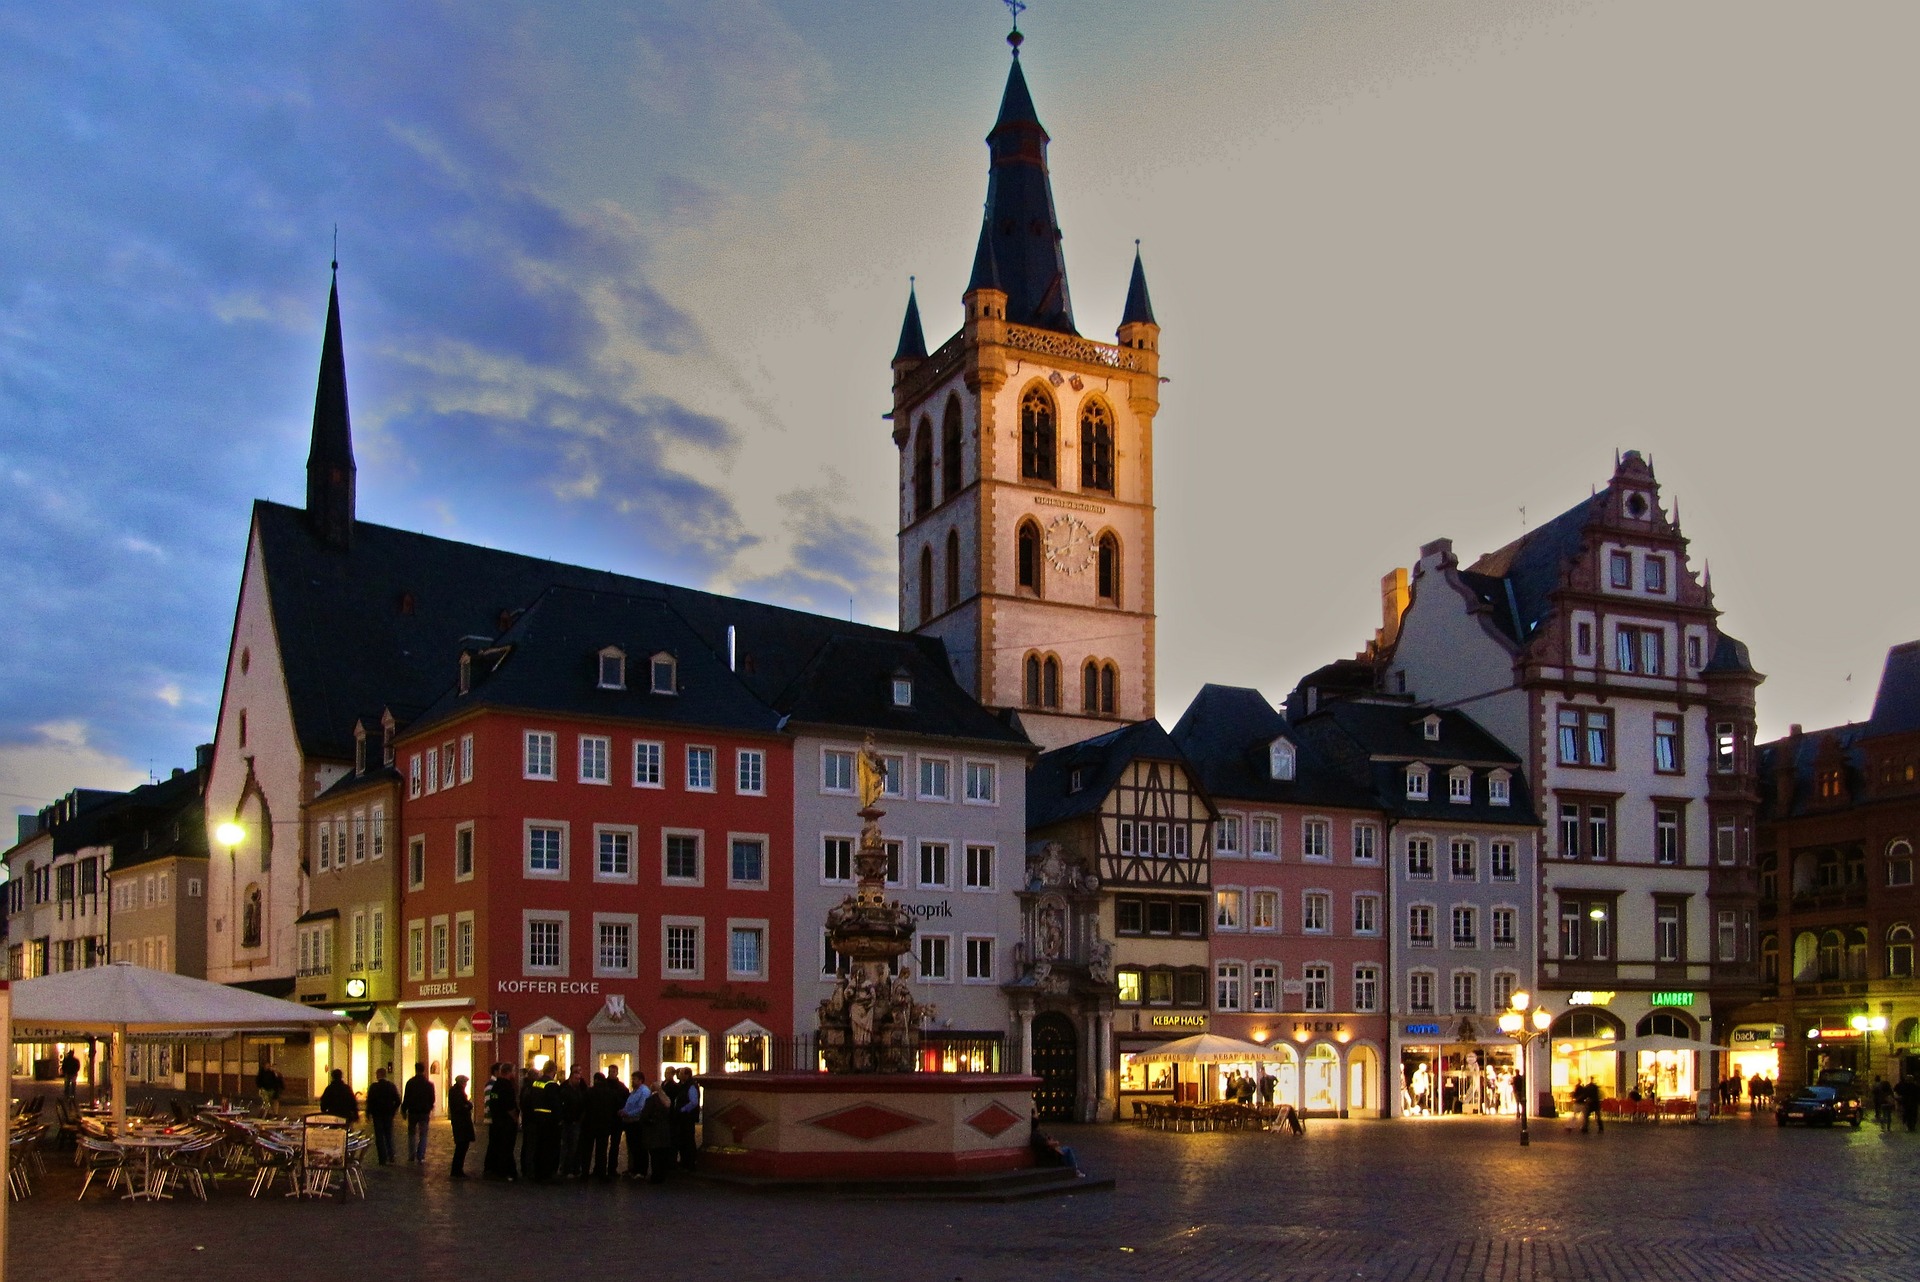 Stadt Trier hier können Sie während der Reise Abends perfekt ausgehen